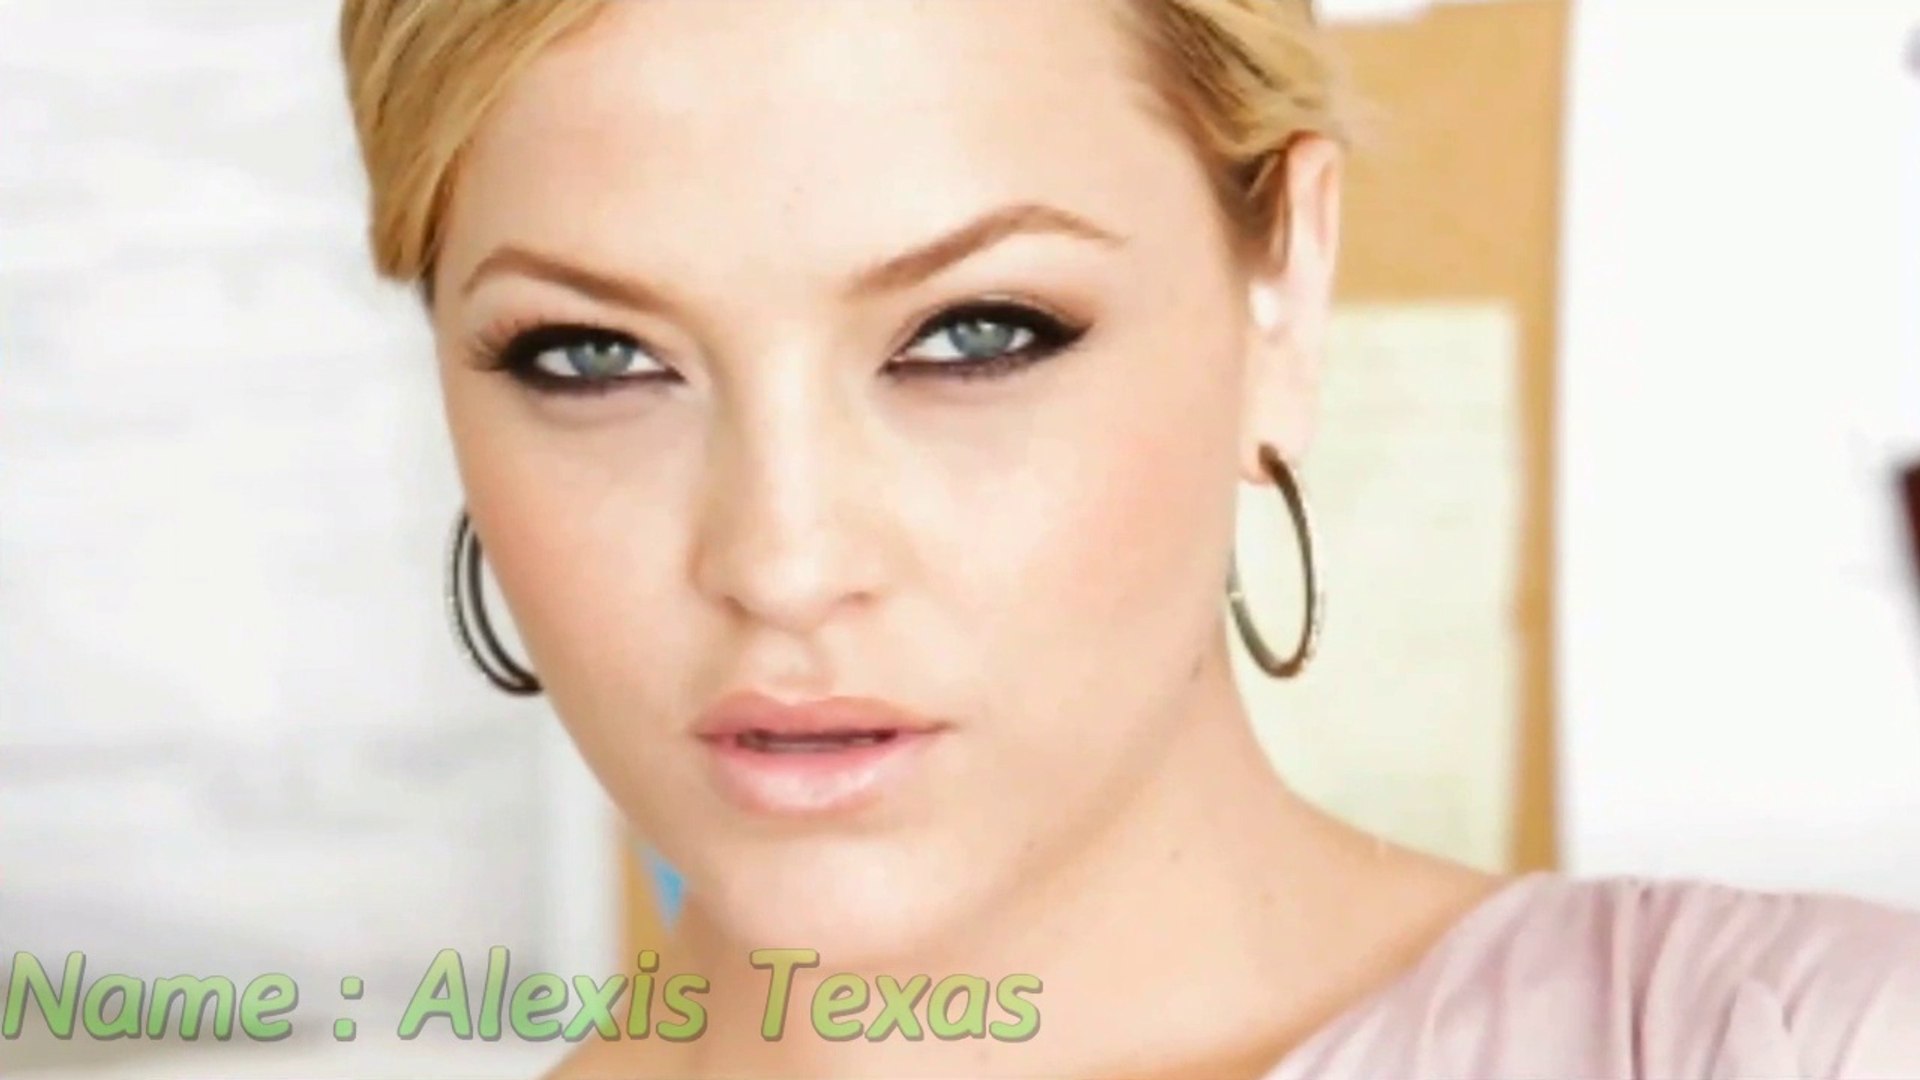 Texas bio alexis Alexis Texas